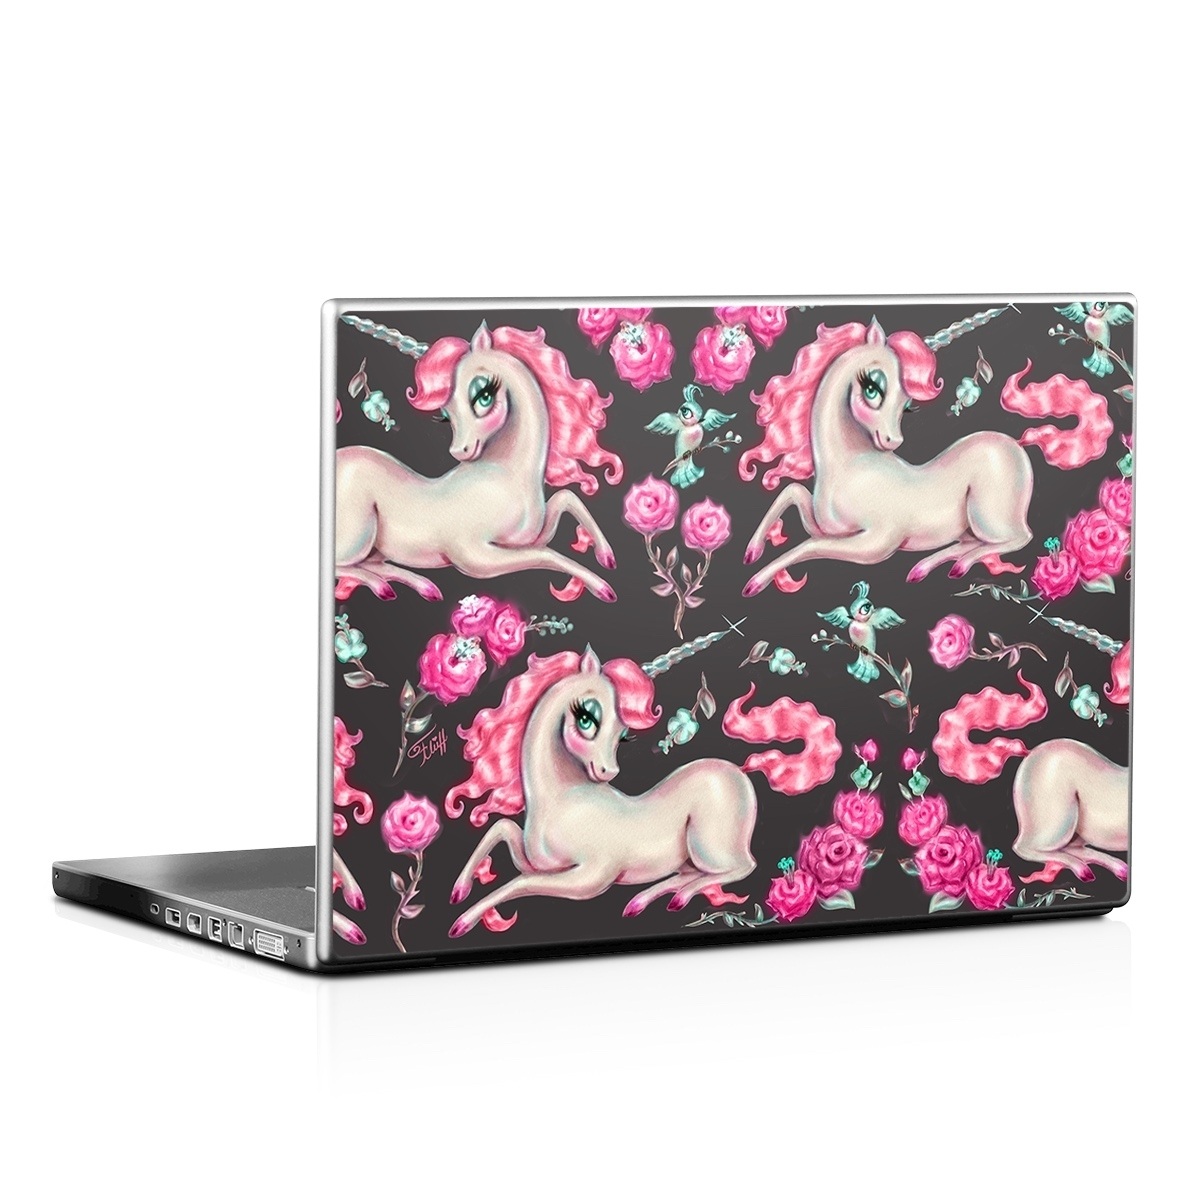 Laptop Skin - Unicorns and Roses (Image 1)